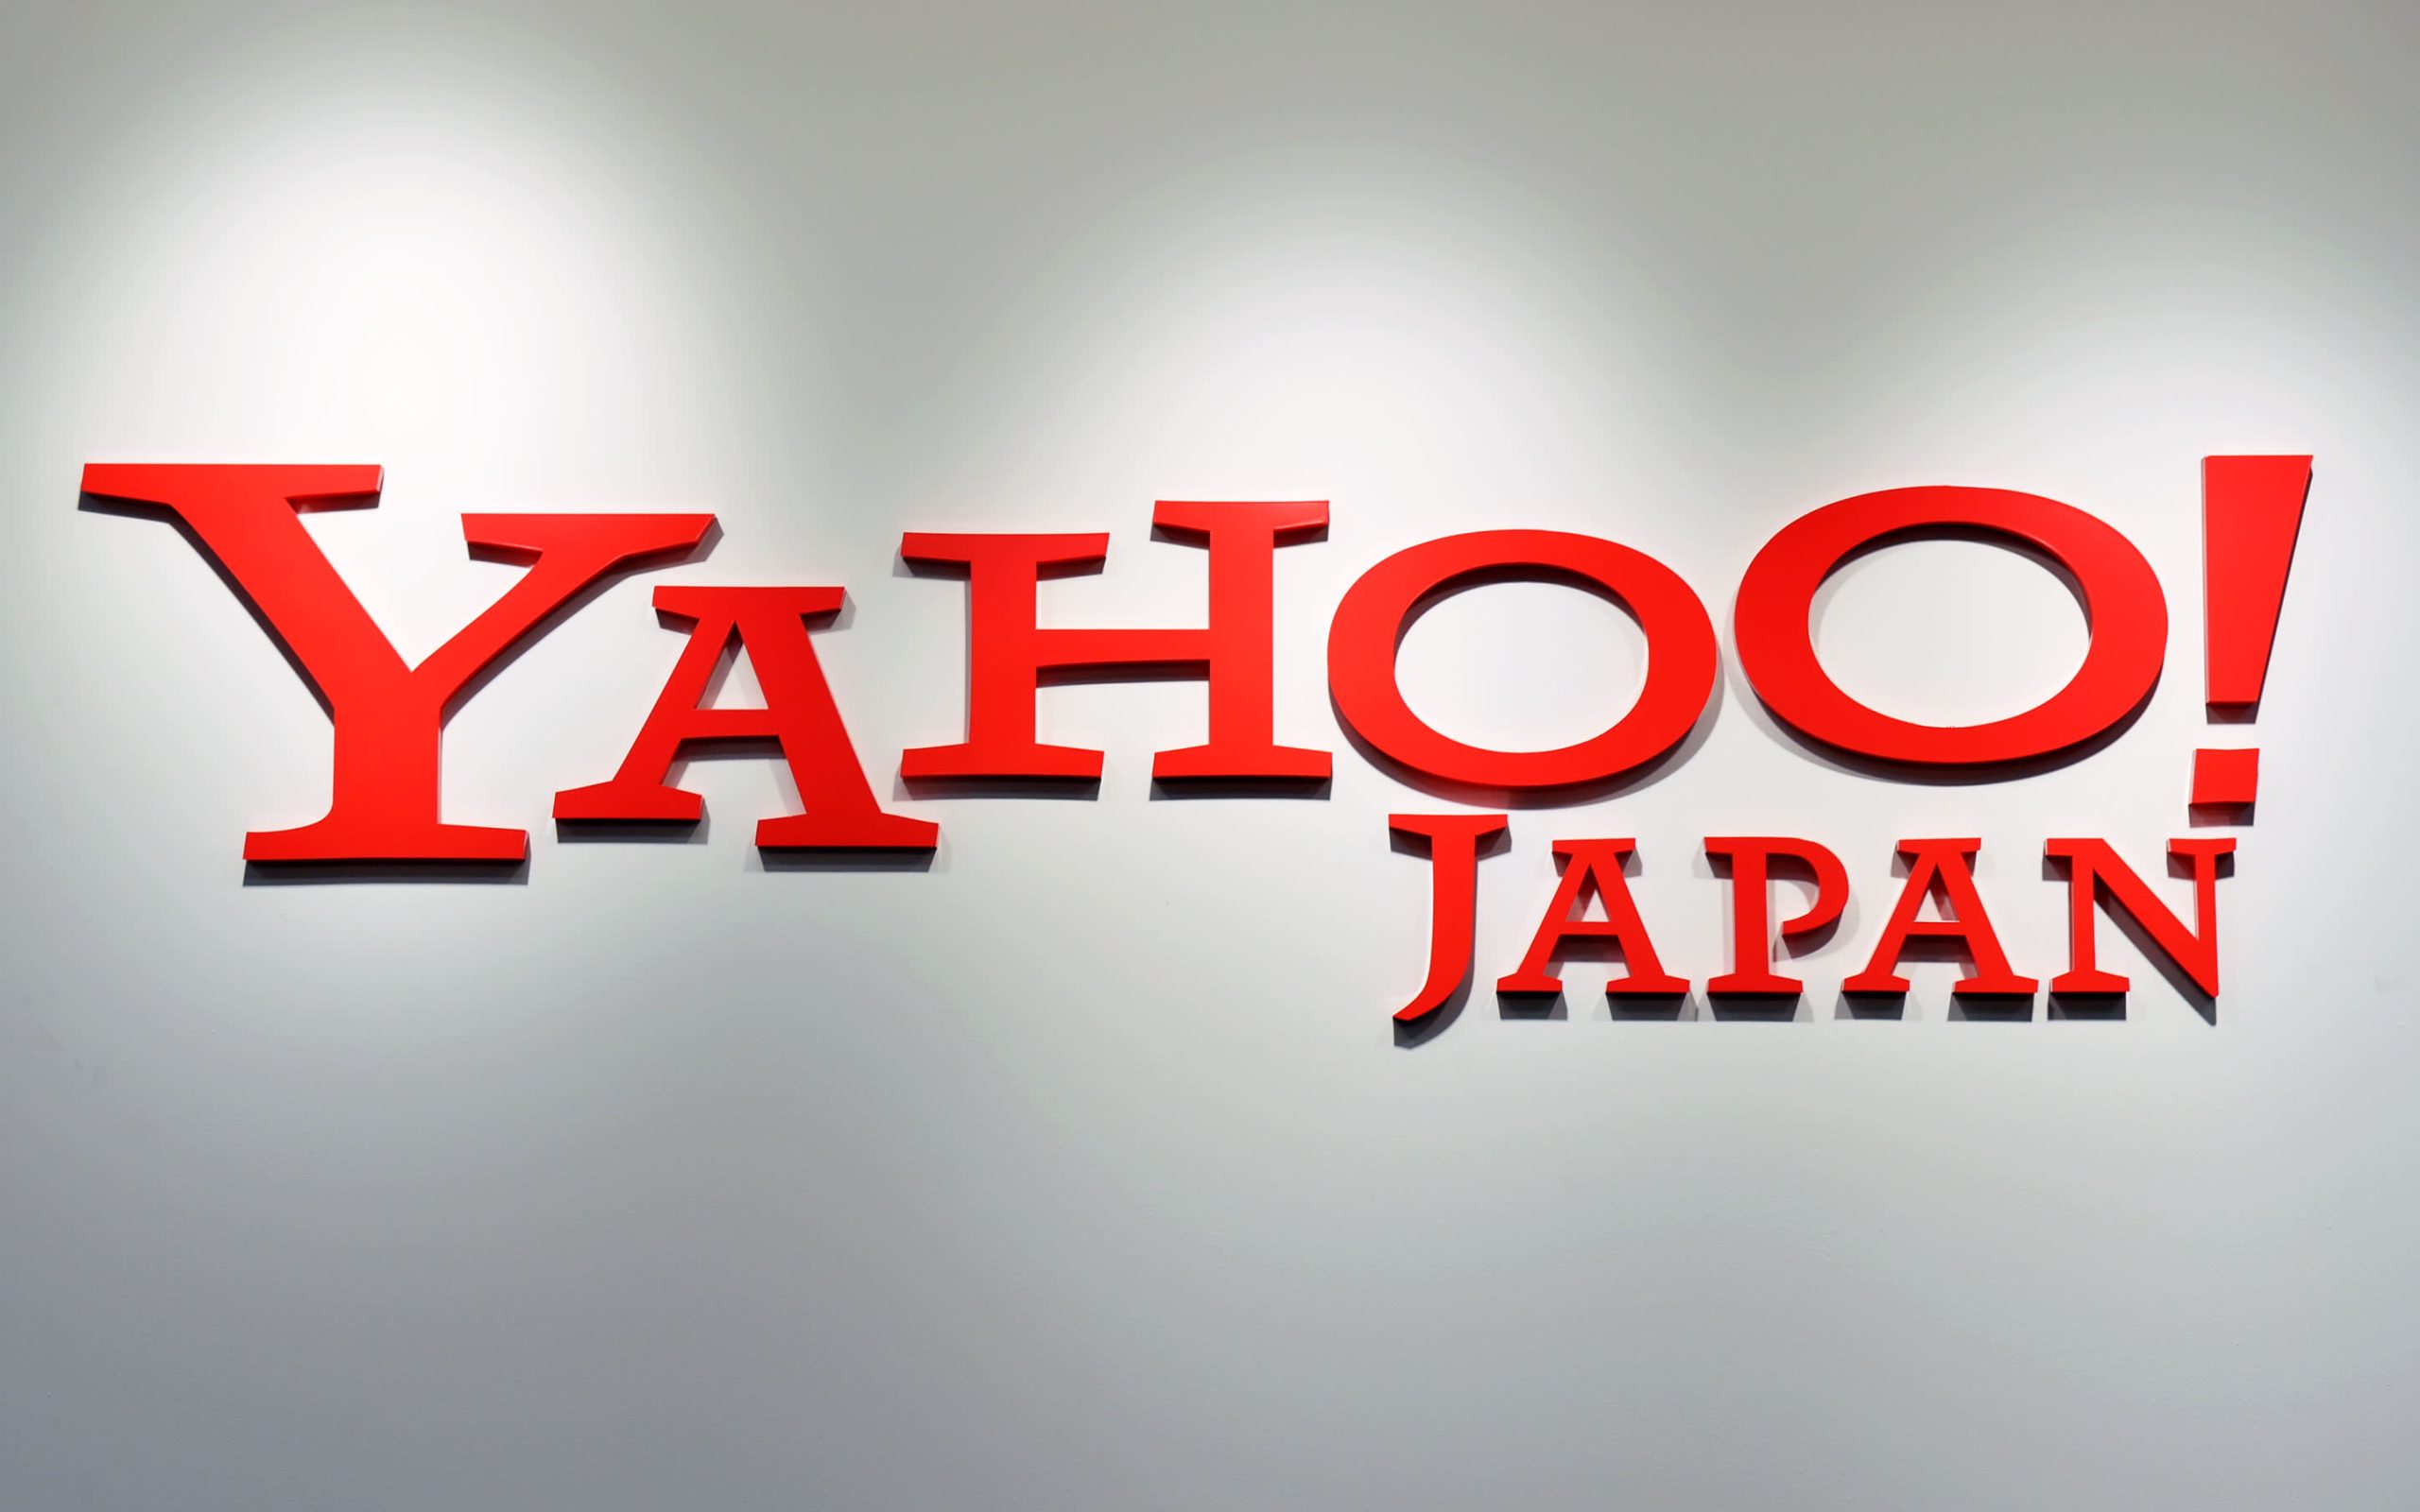 Yahoo Japan Dan Line Sah Akan Bergabung Menjadi Satu Syarikat Pada Oktober 2020